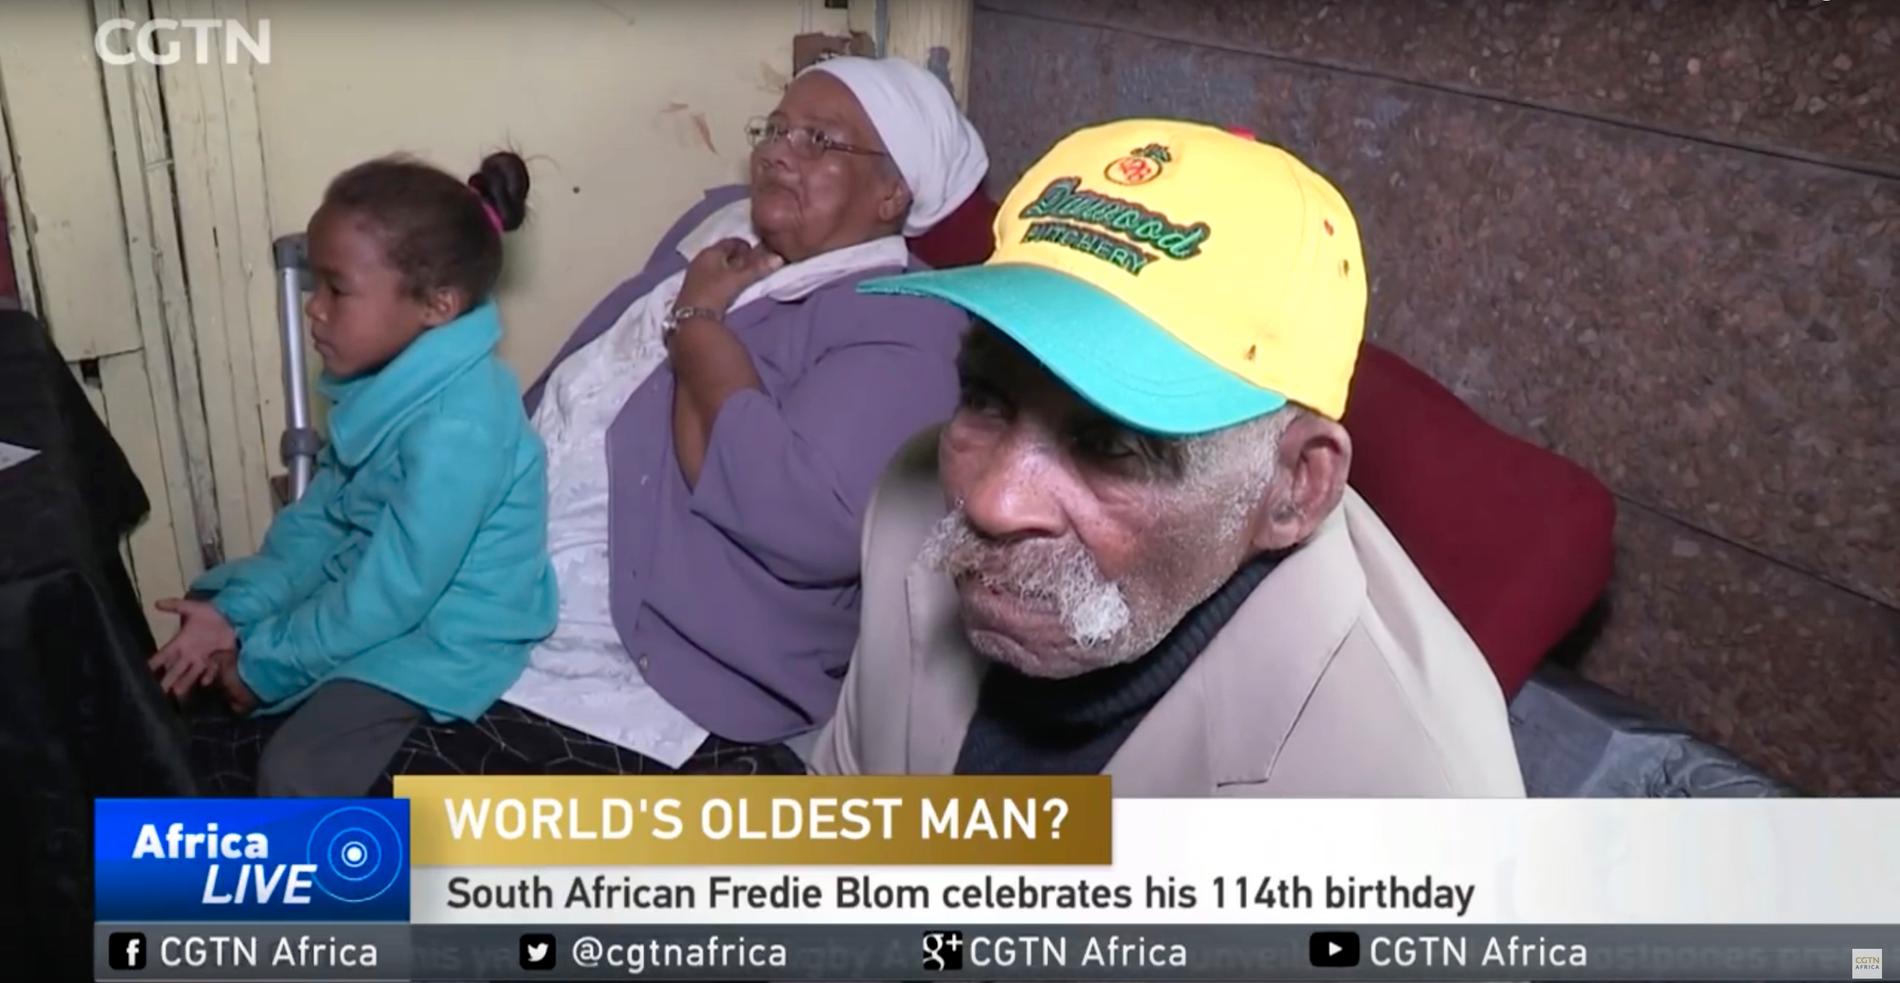 Flera medier besökte 114-åringen på hans födelsedag.